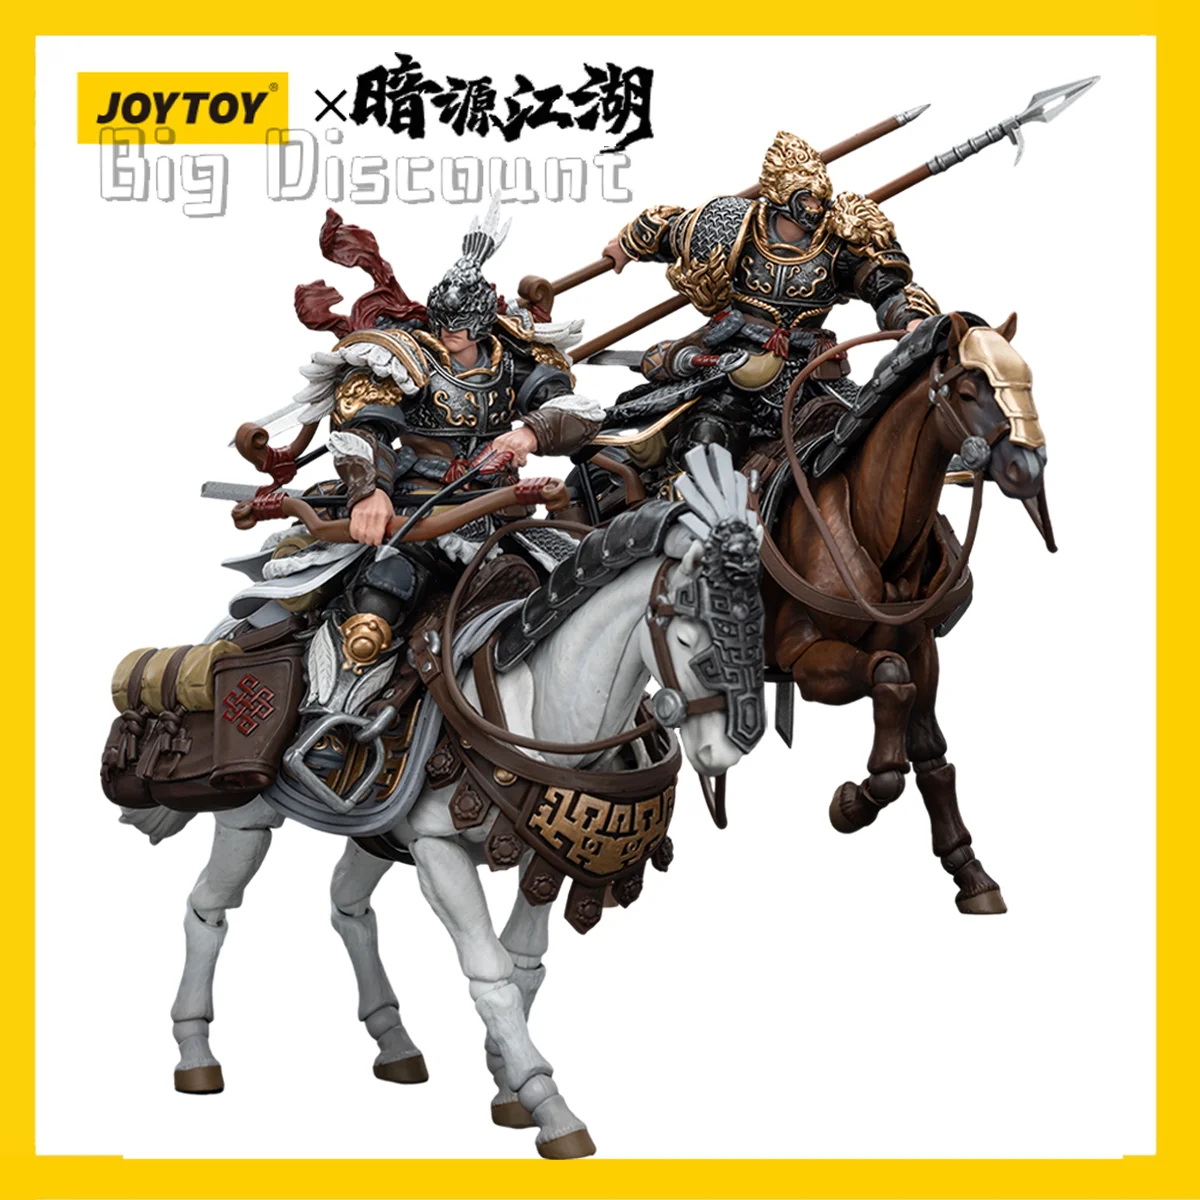 

[Предзаказ] игрушка JOY TOY 1/18 Темный источник JiangHu Северная ганландская Империя кавалерия и лошадь 4 шт. модель бесплатная доставка